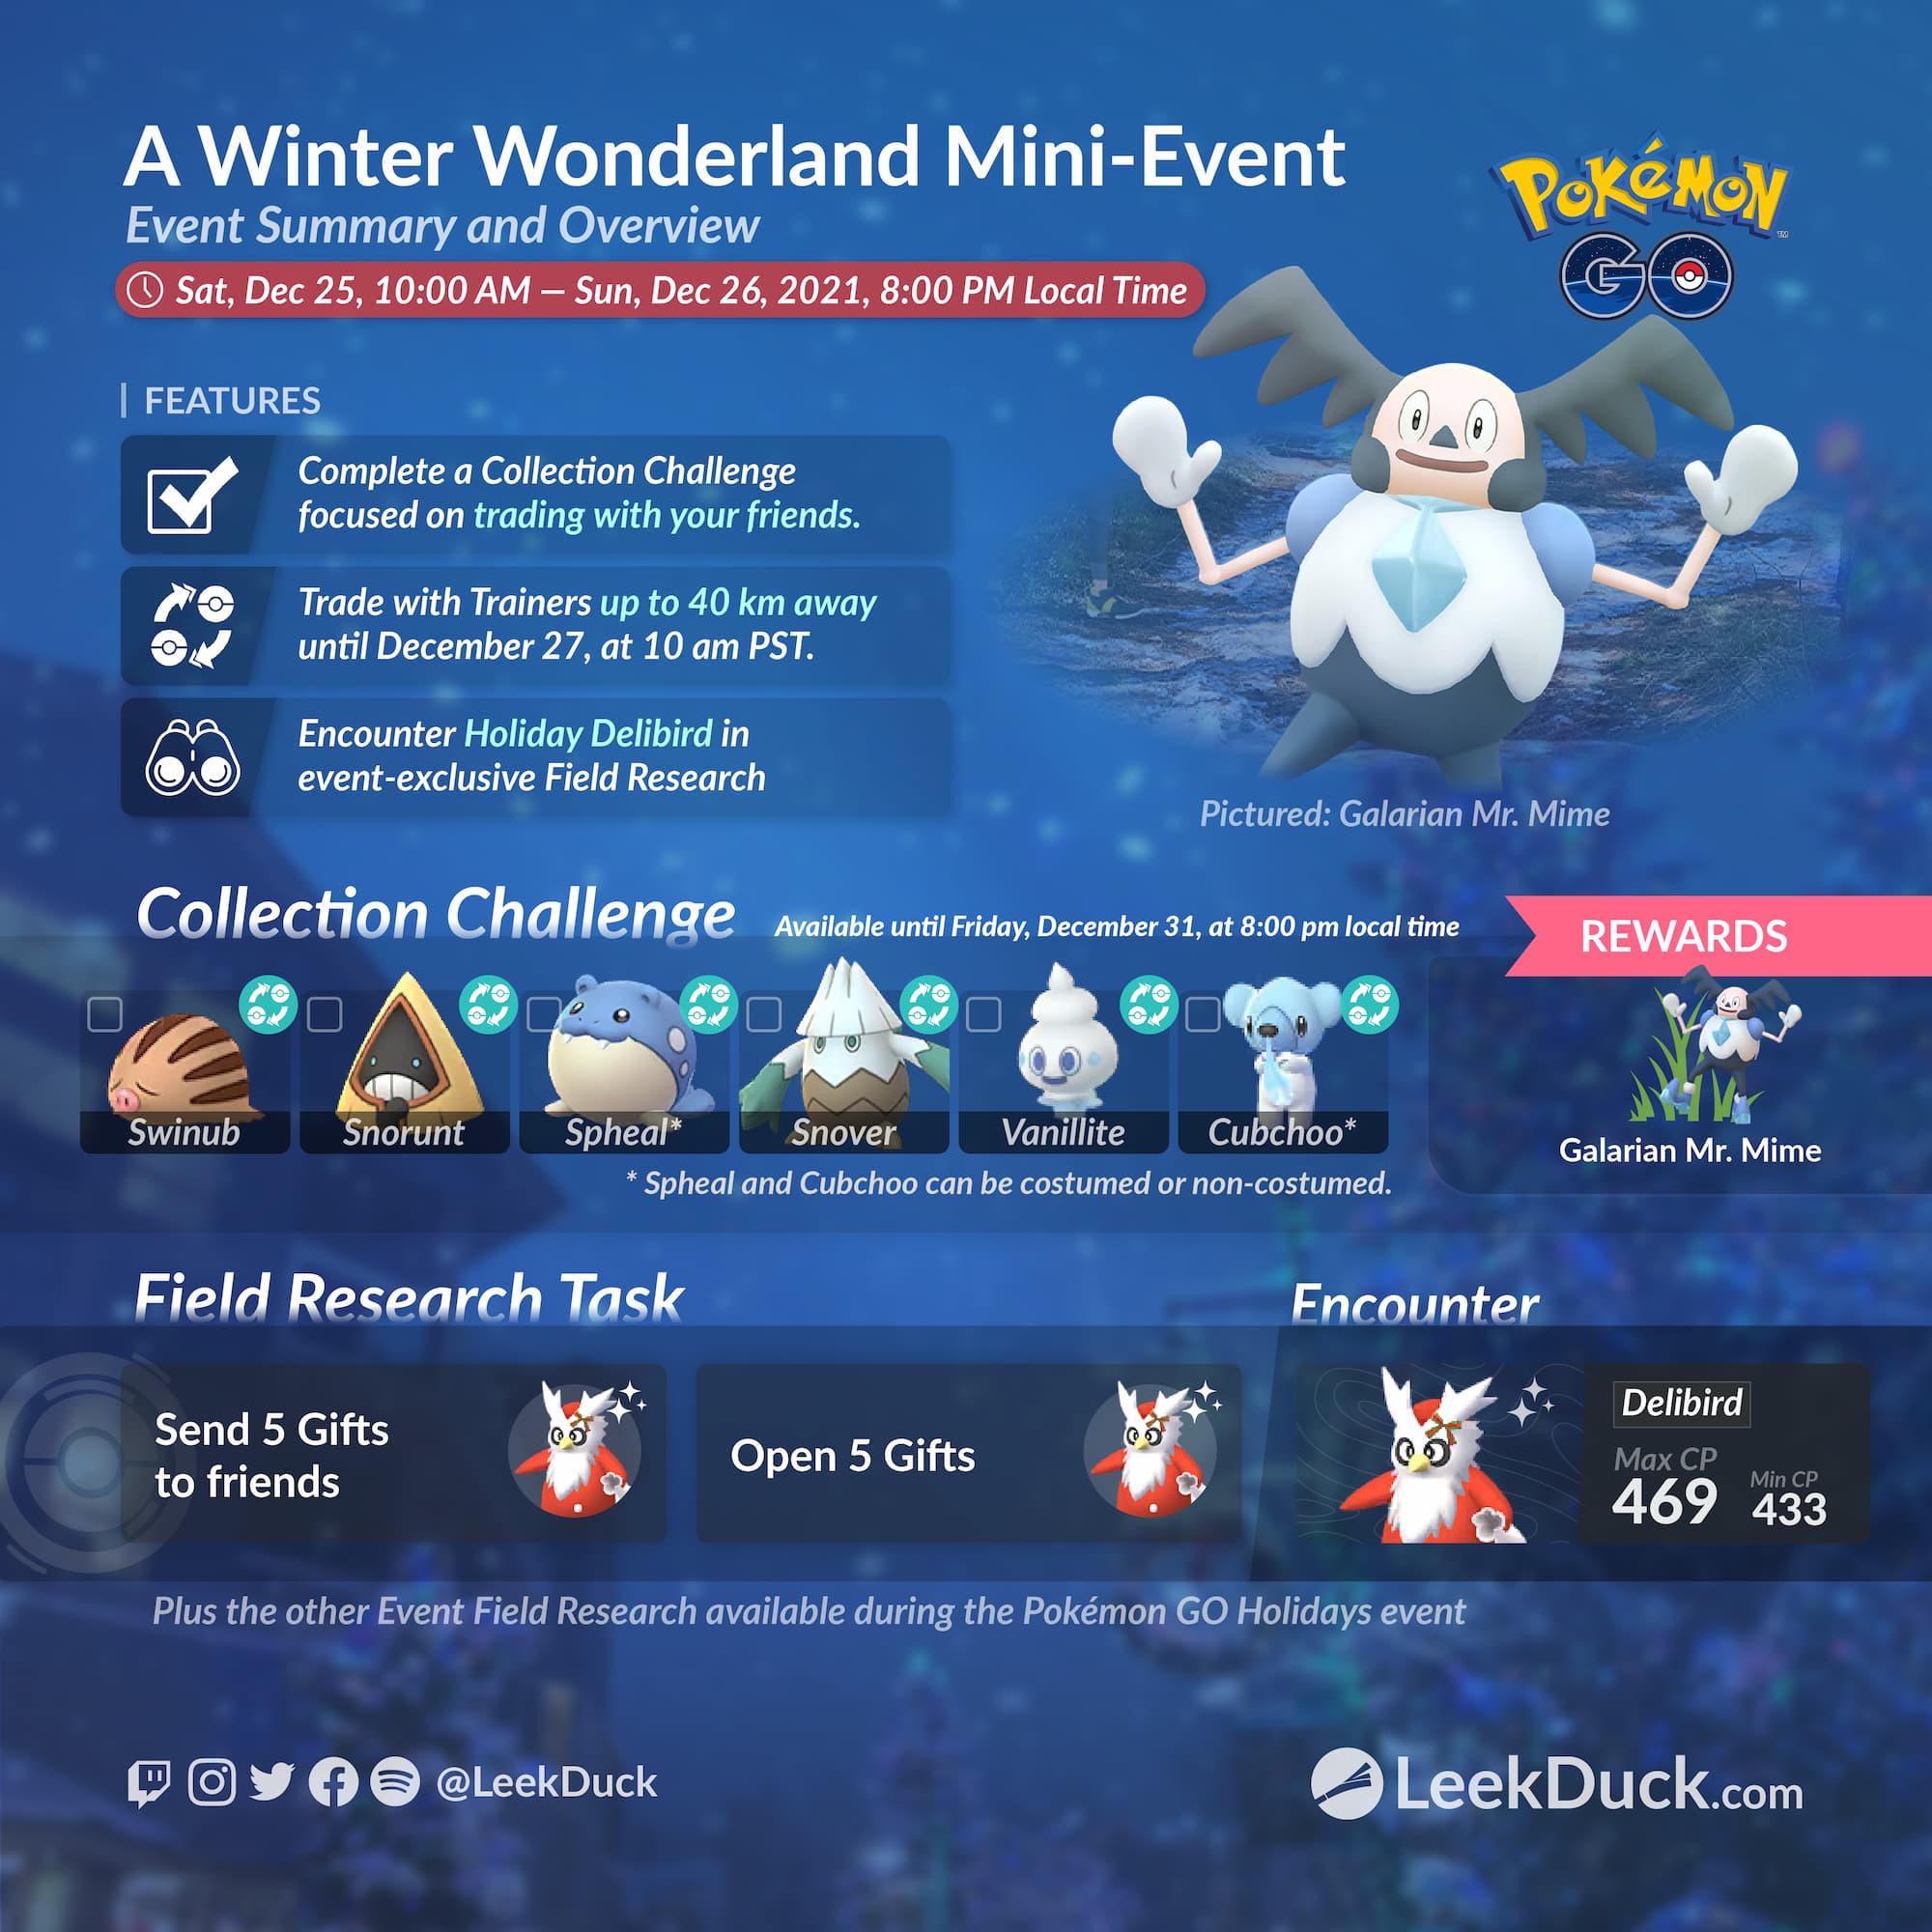 A Winter Wonderland MiniEvent Leek Duck Pokémon GO News and Resources